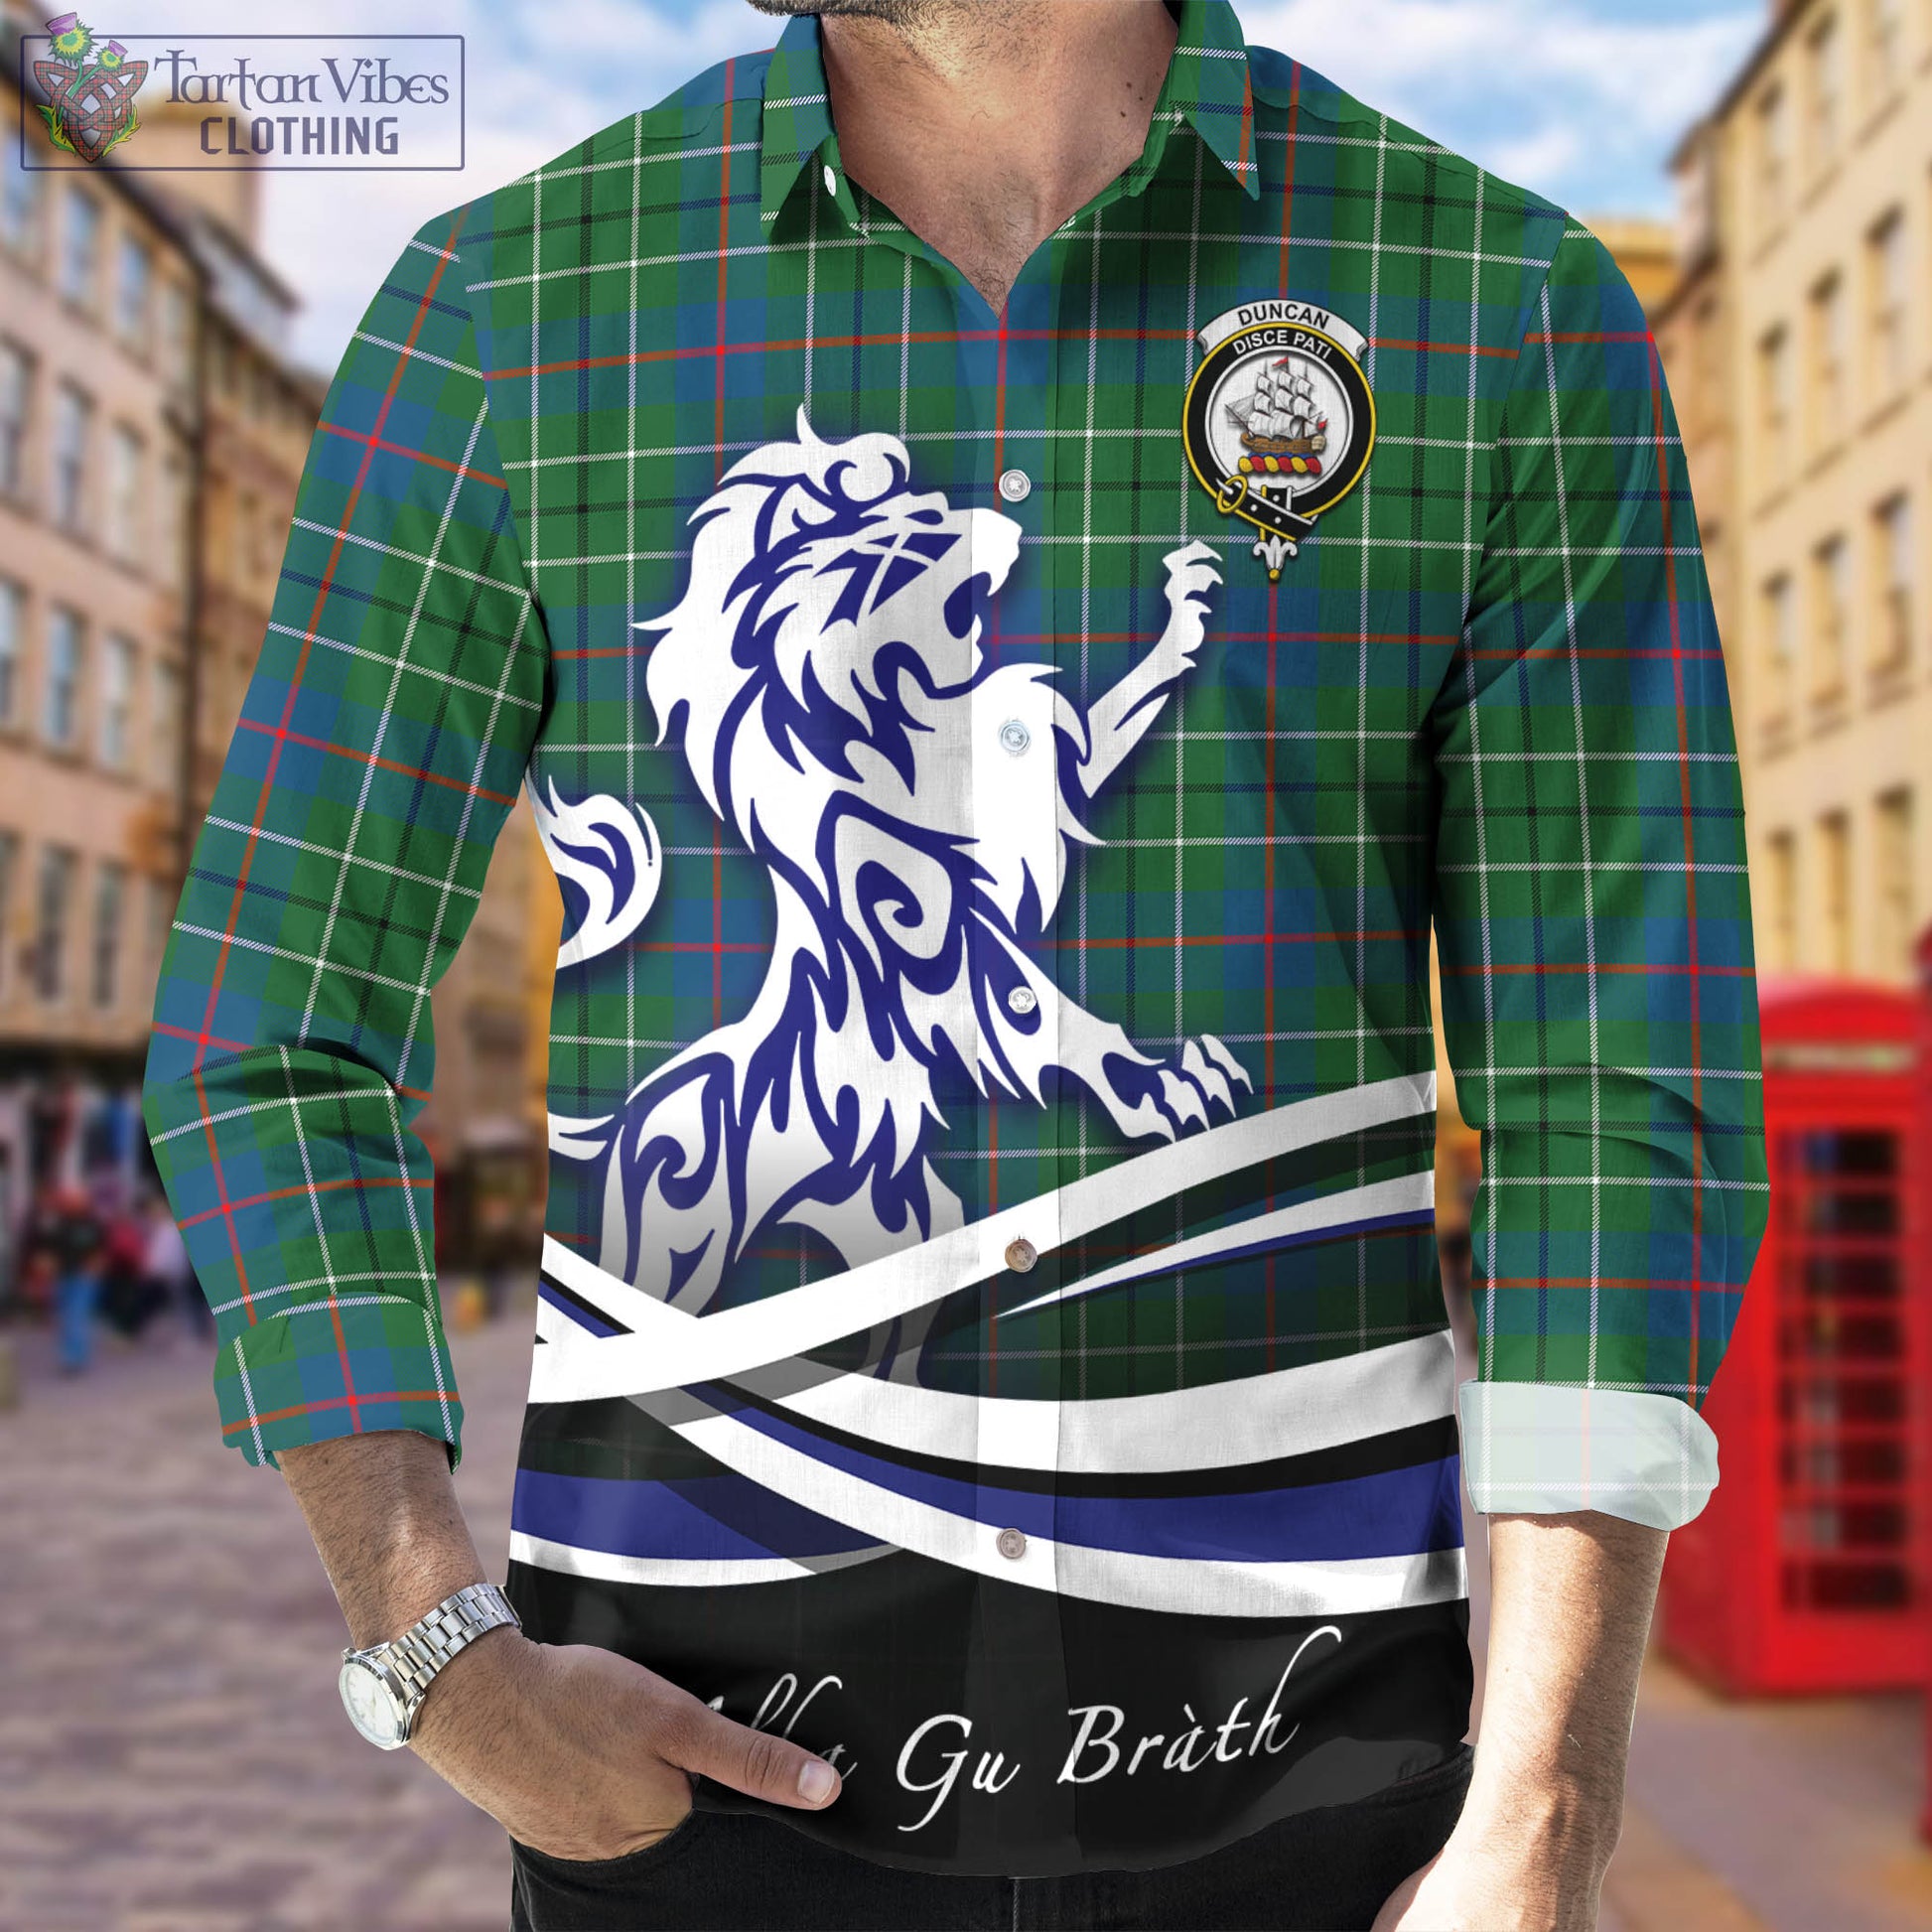 duncan-ancient-tartan-long-sleeve-button-up-shirt-with-alba-gu-brath-regal-lion-emblem